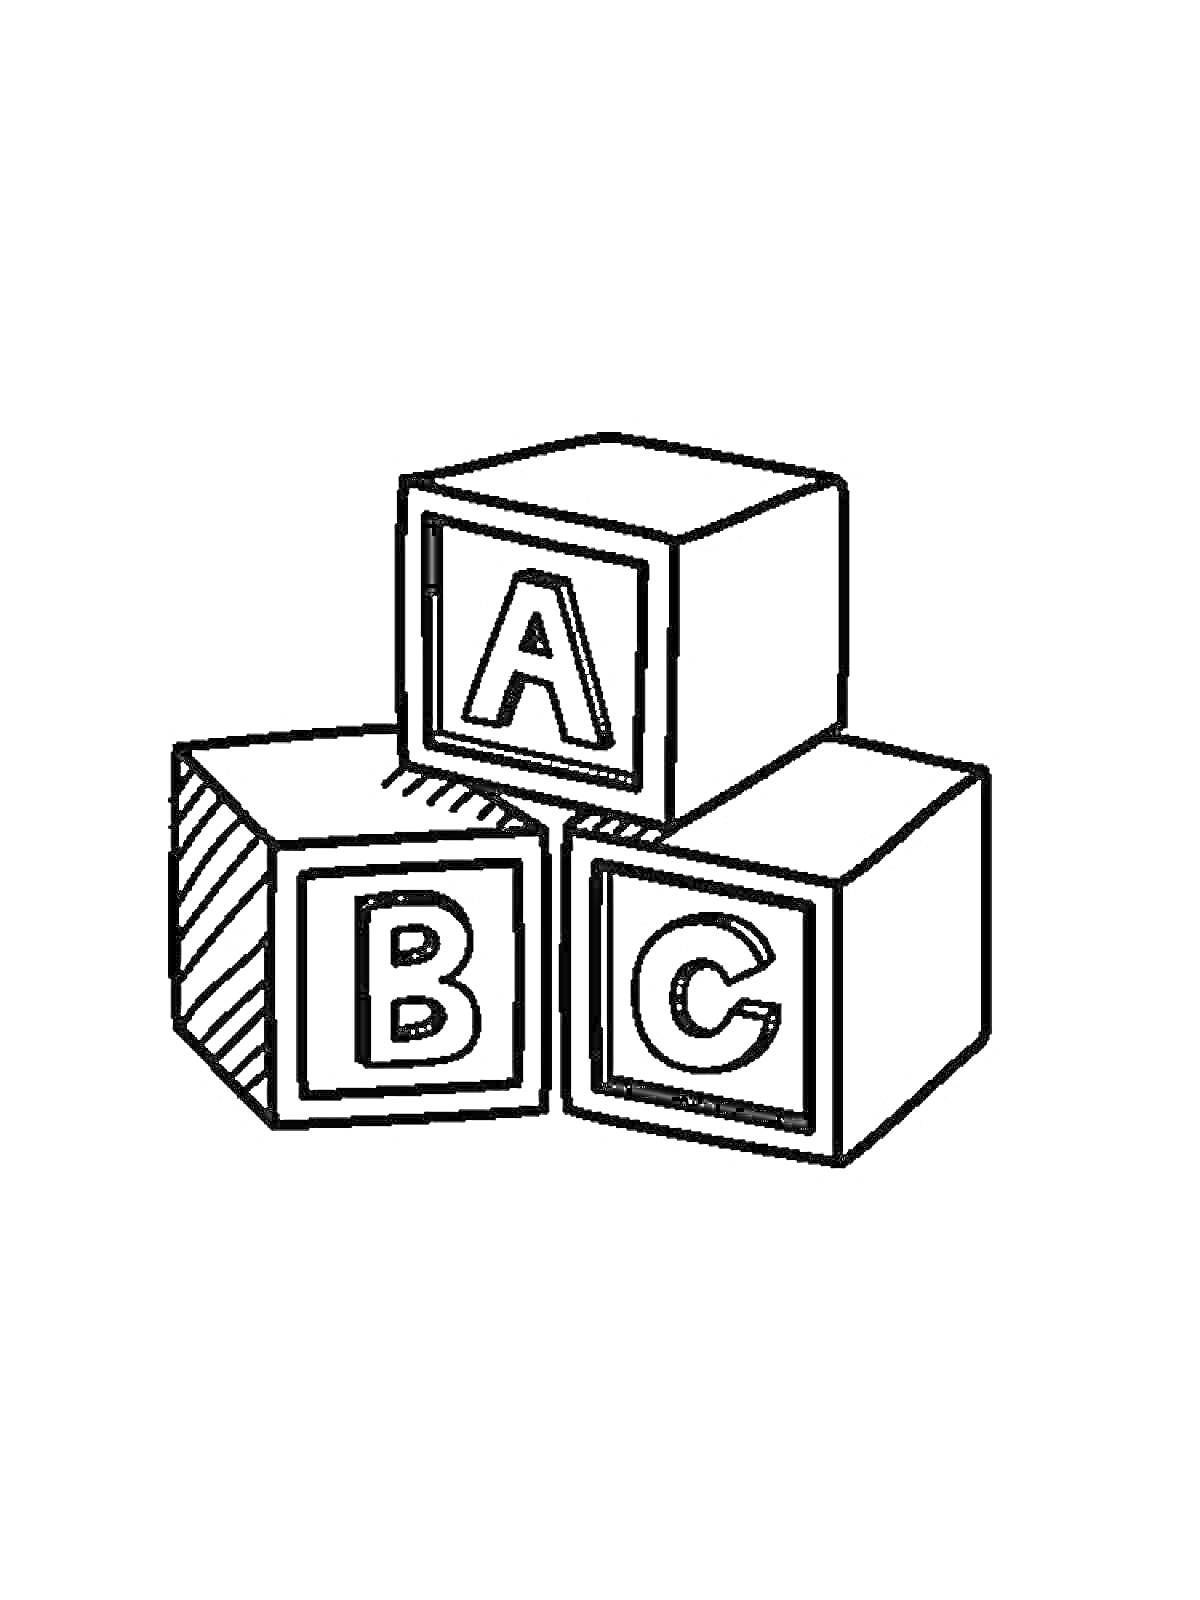 Картинка с тремя кубиками с буквами A, B, C